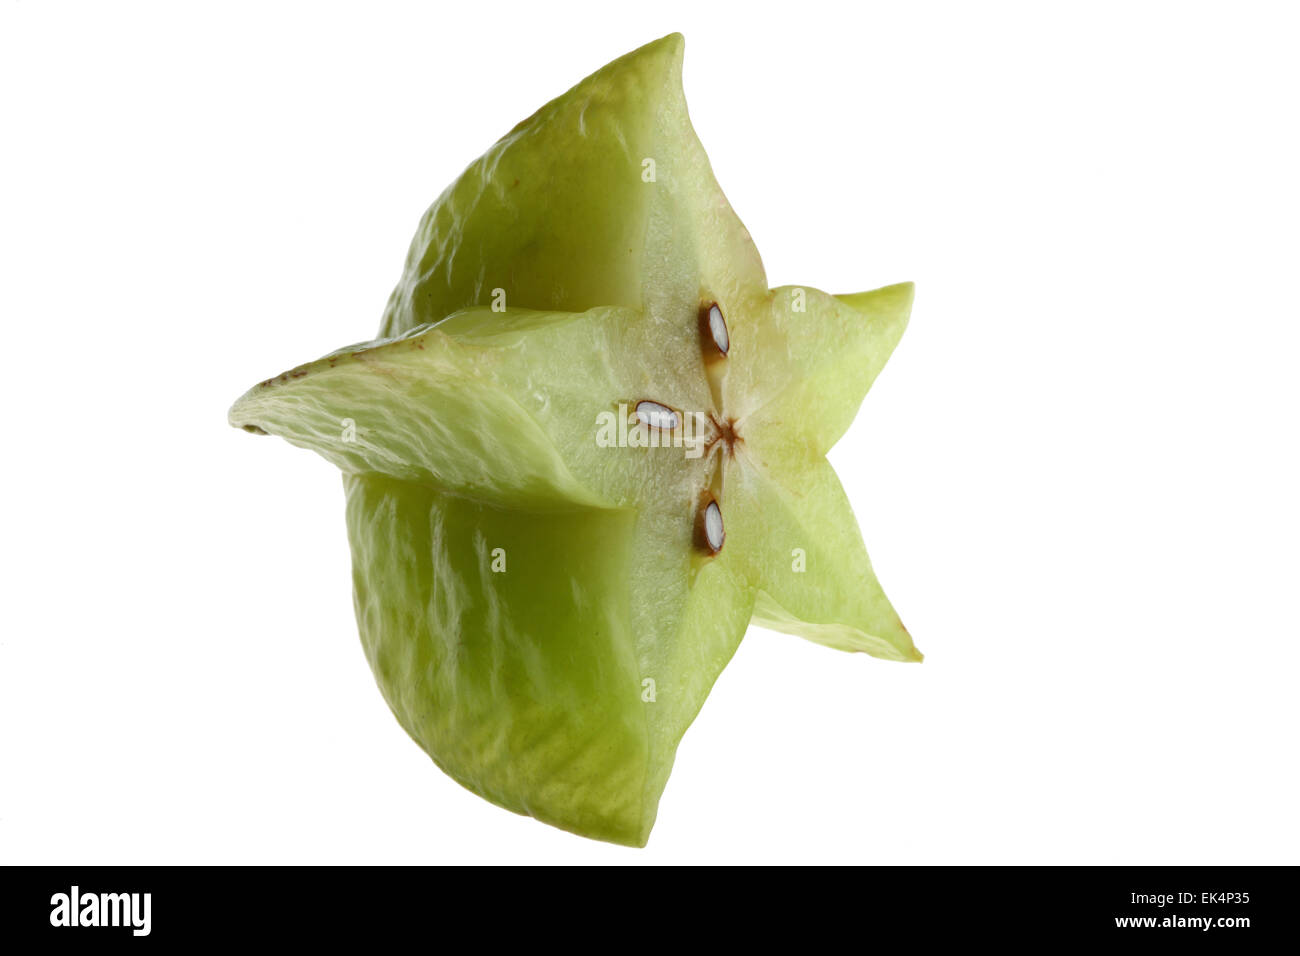 Star fruit, carambola, Averrhoa carambola Stock Photo